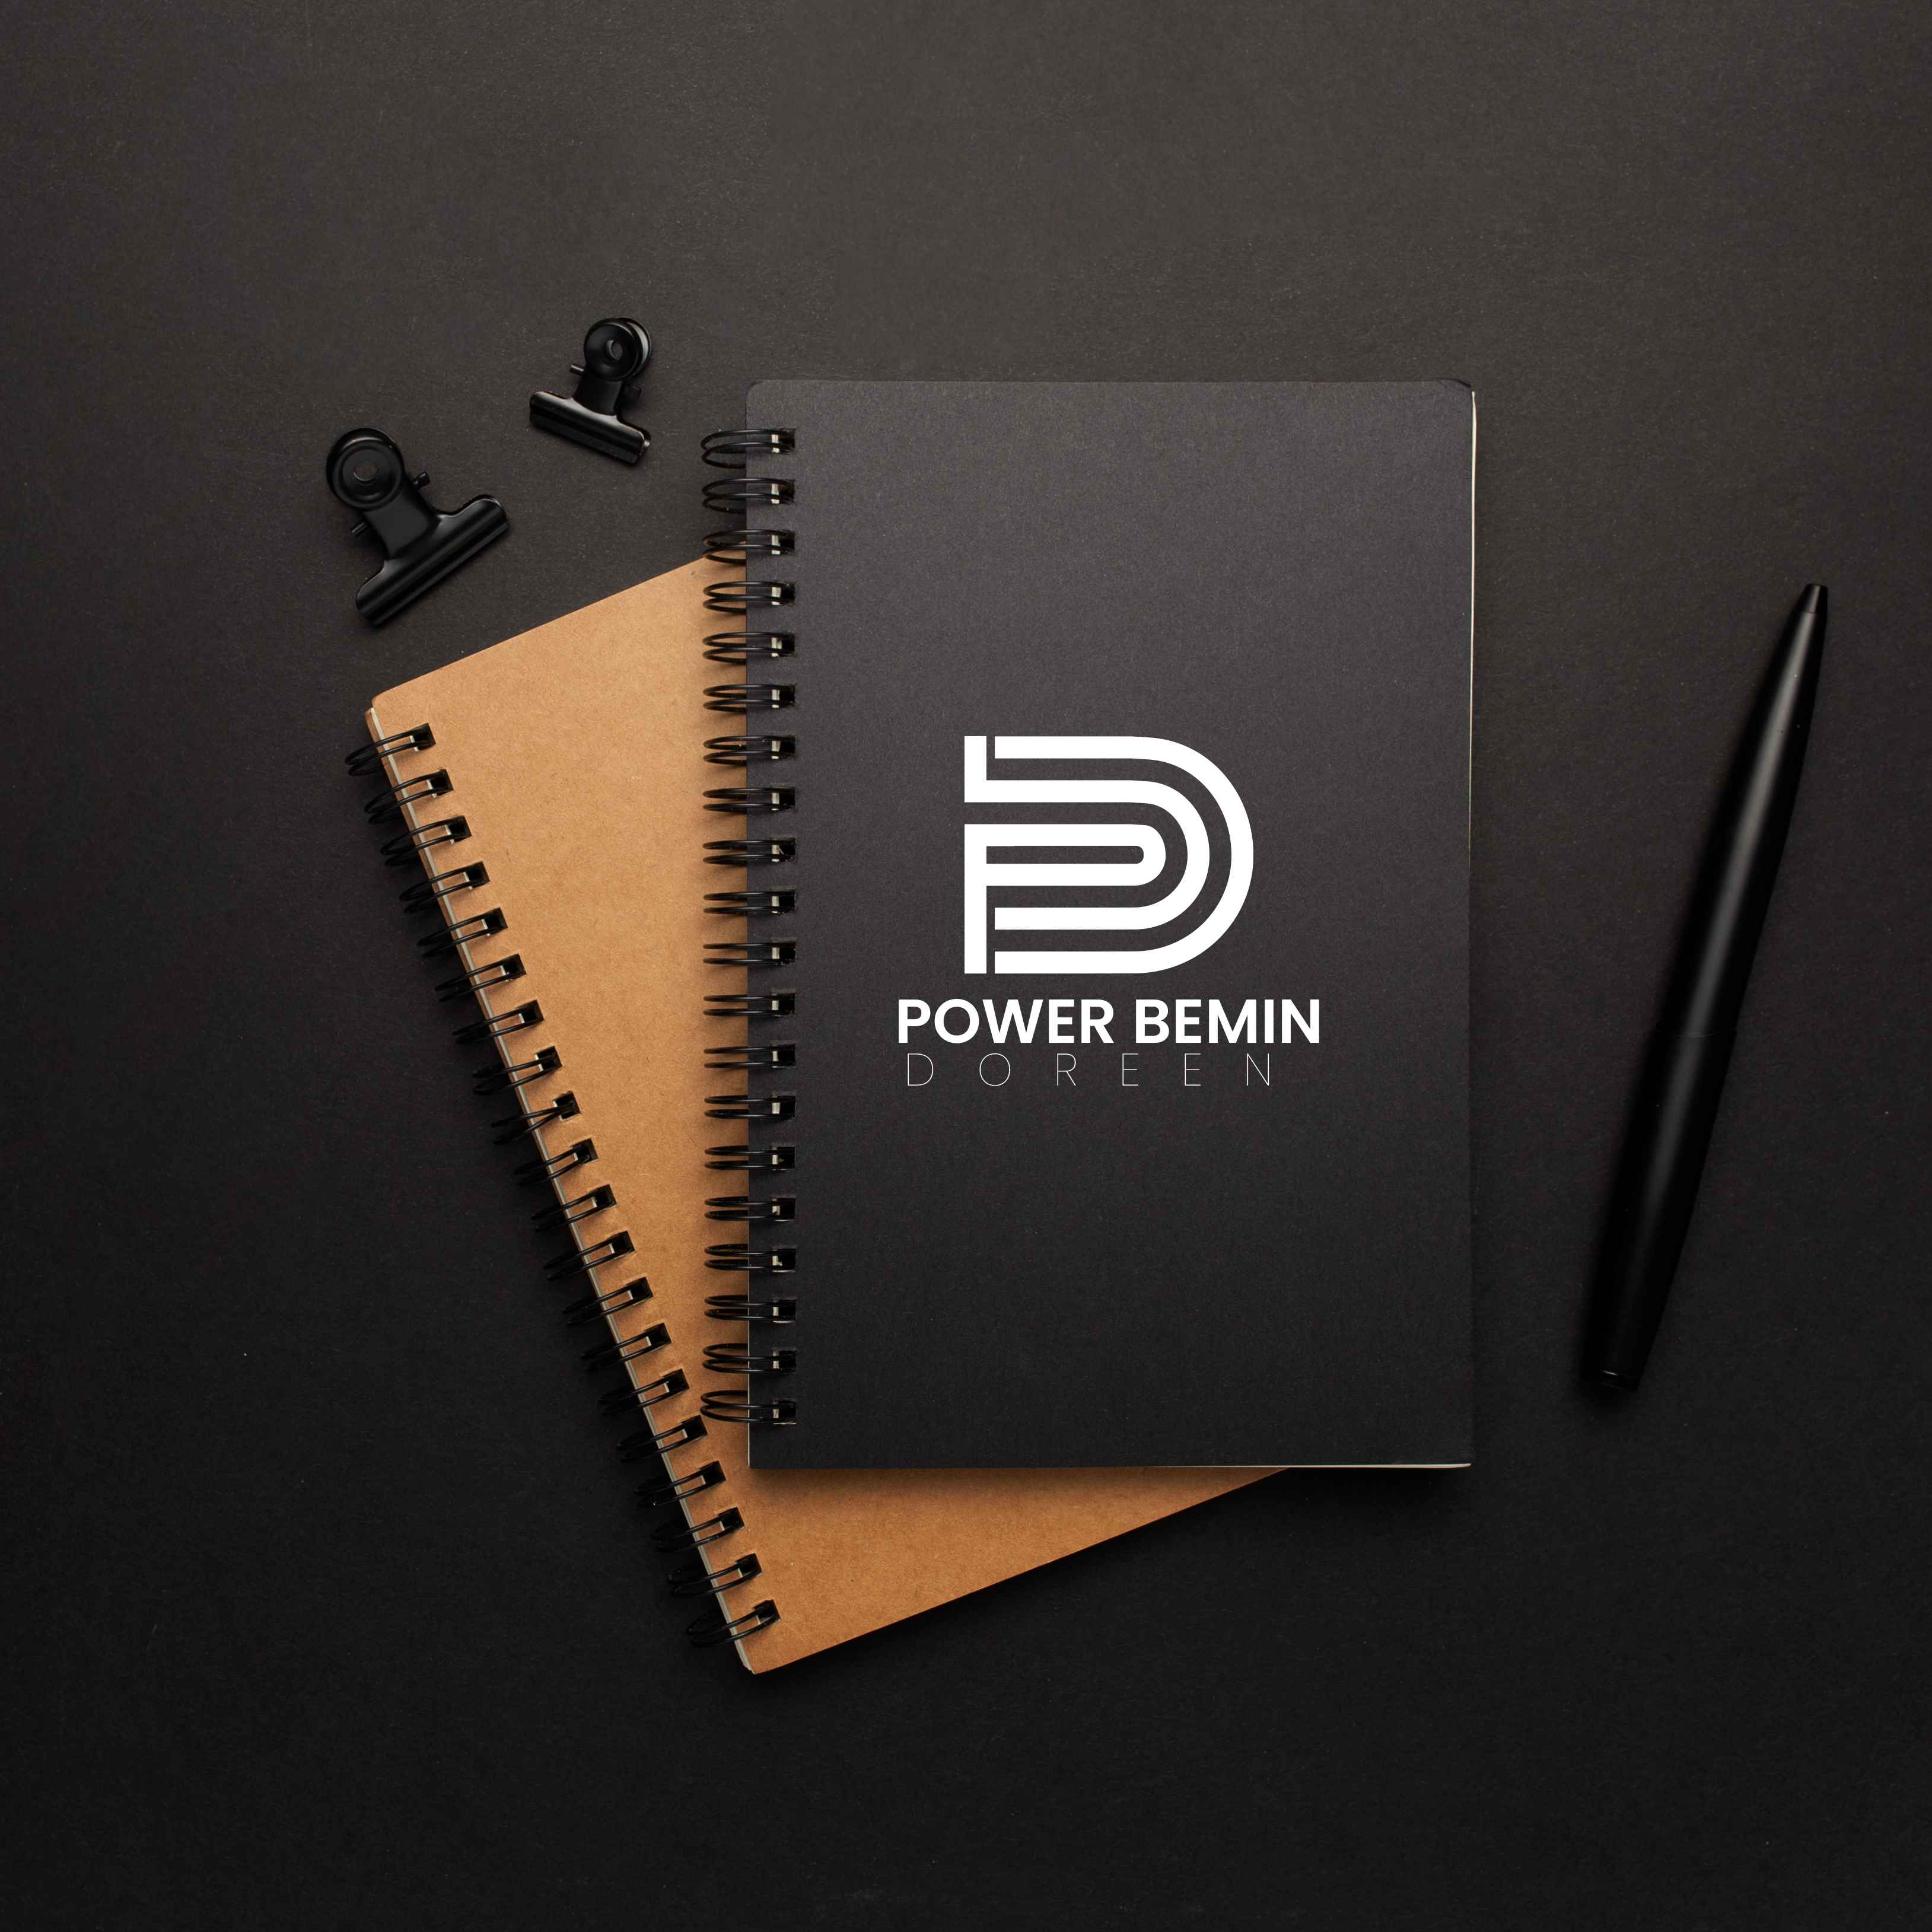 pbd letter logo preview 02 11zon 162